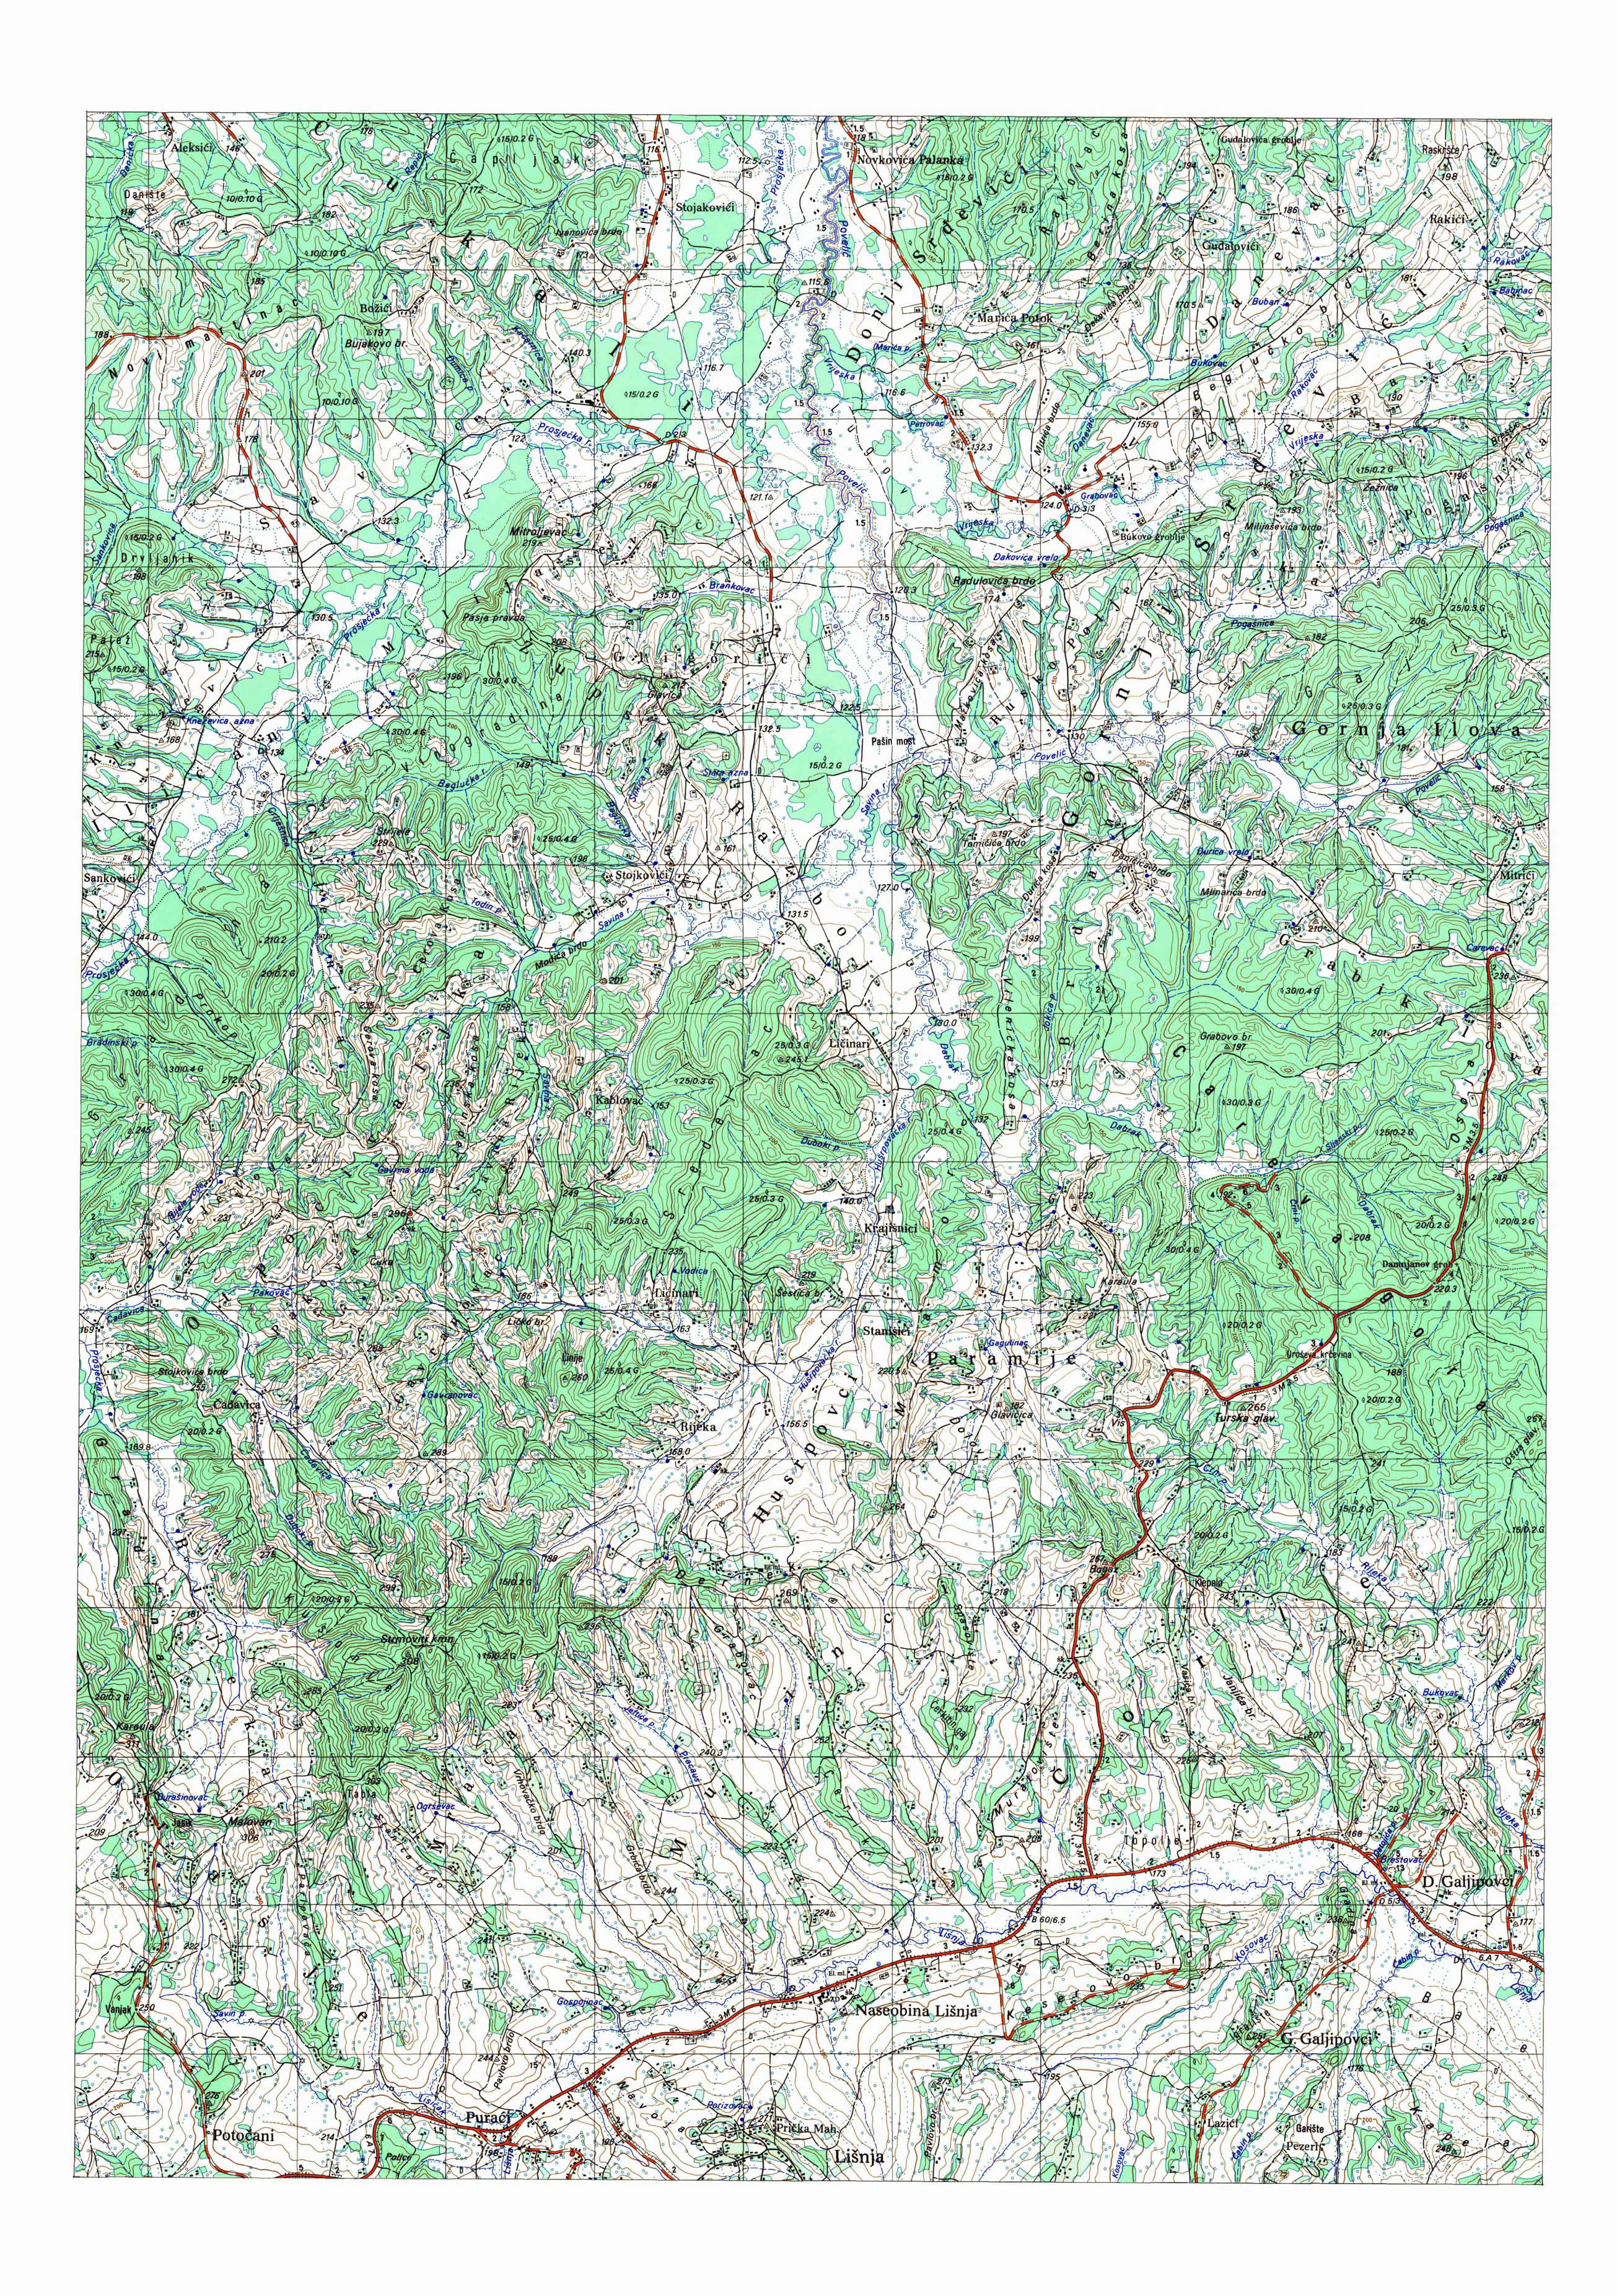  topografska karta BiH 25000 JNA  lisnja sever